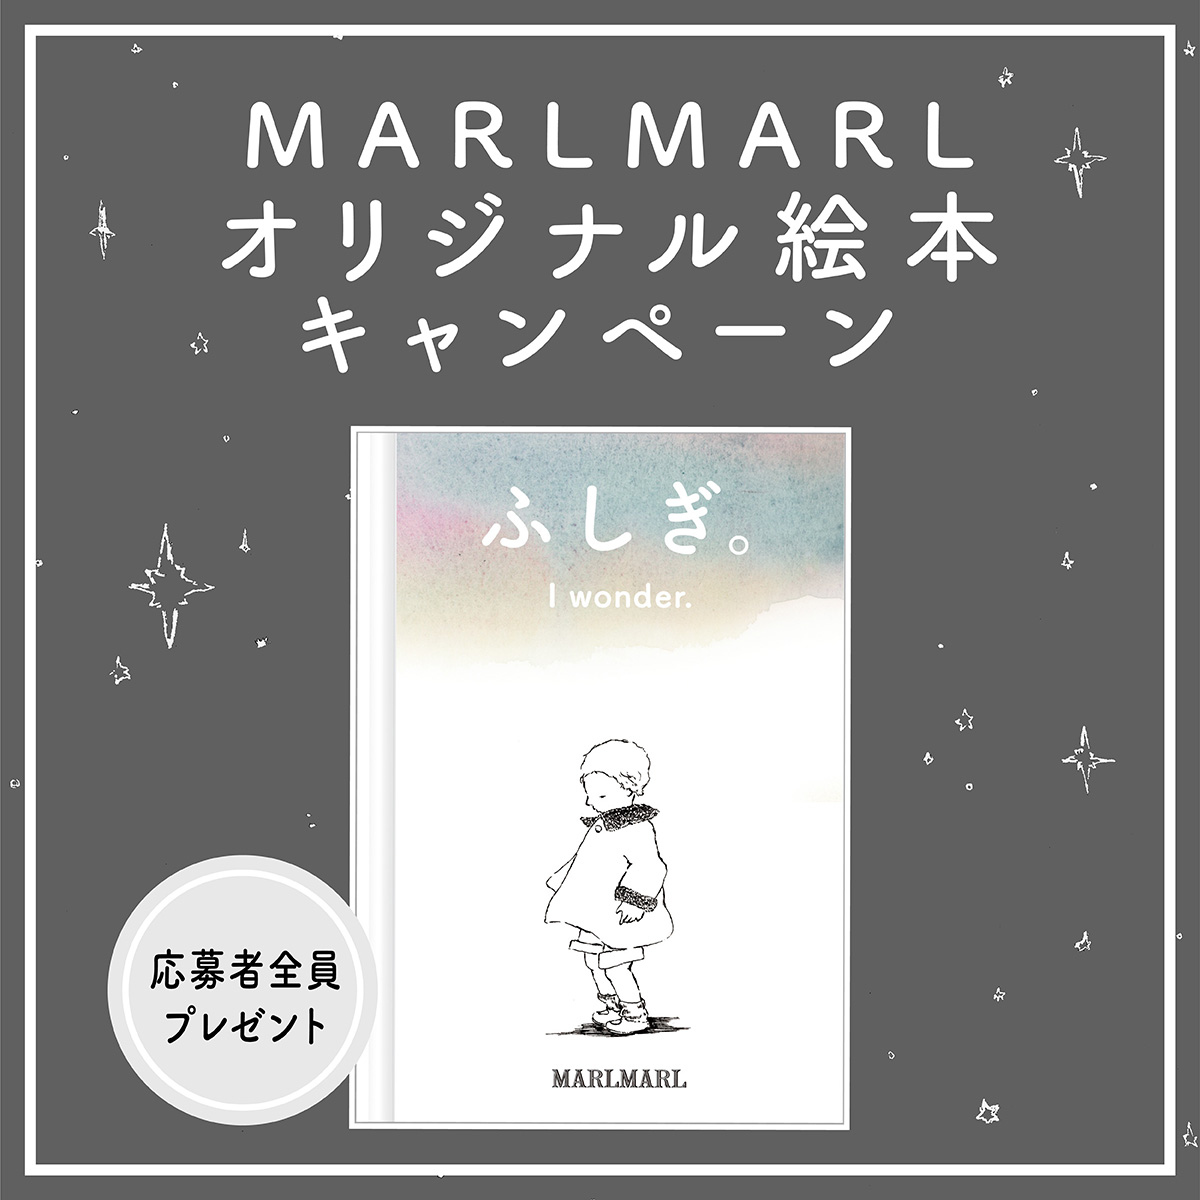 MARLMARL オリジナル絵本キャンペーン